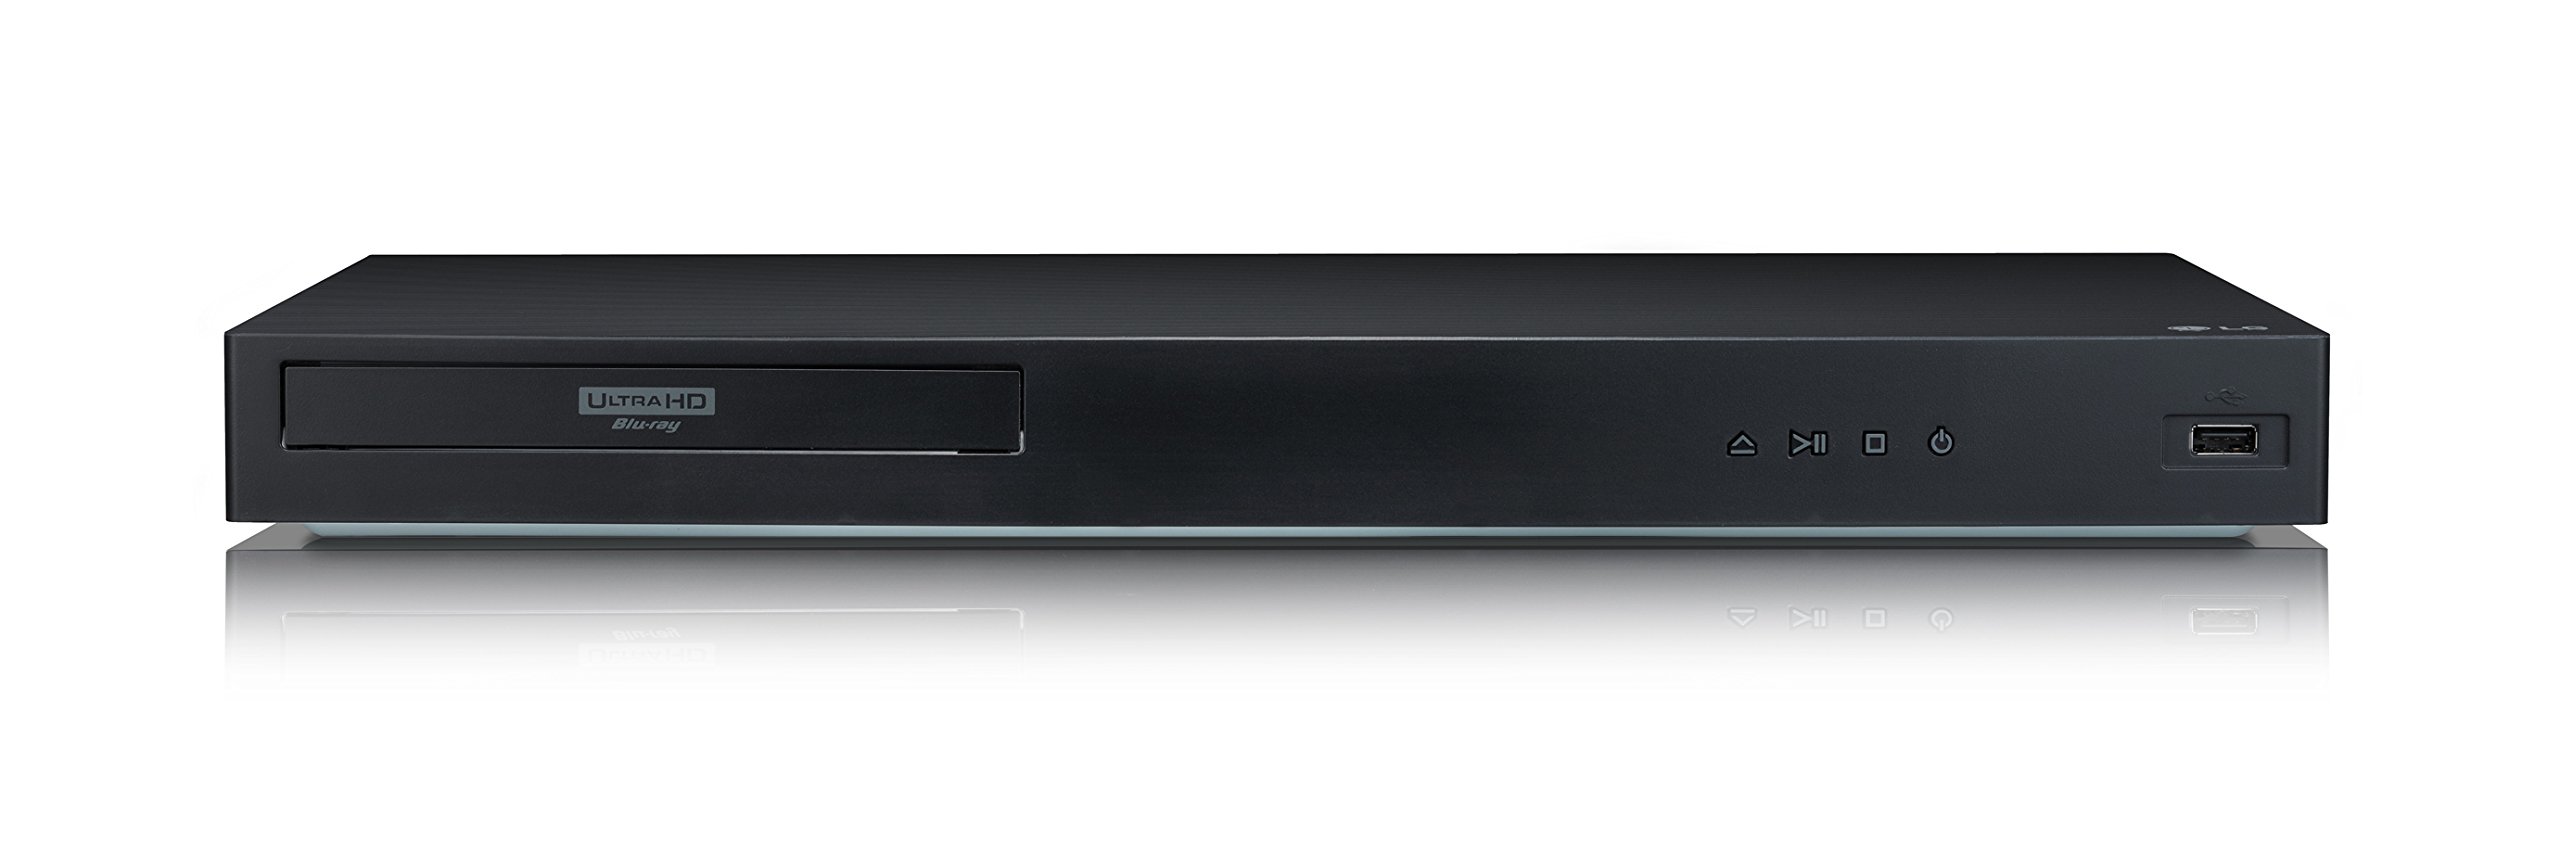 LG UBK80: סקירה מקיפה של נגן Blu-ray בעל תקציב ידידותי